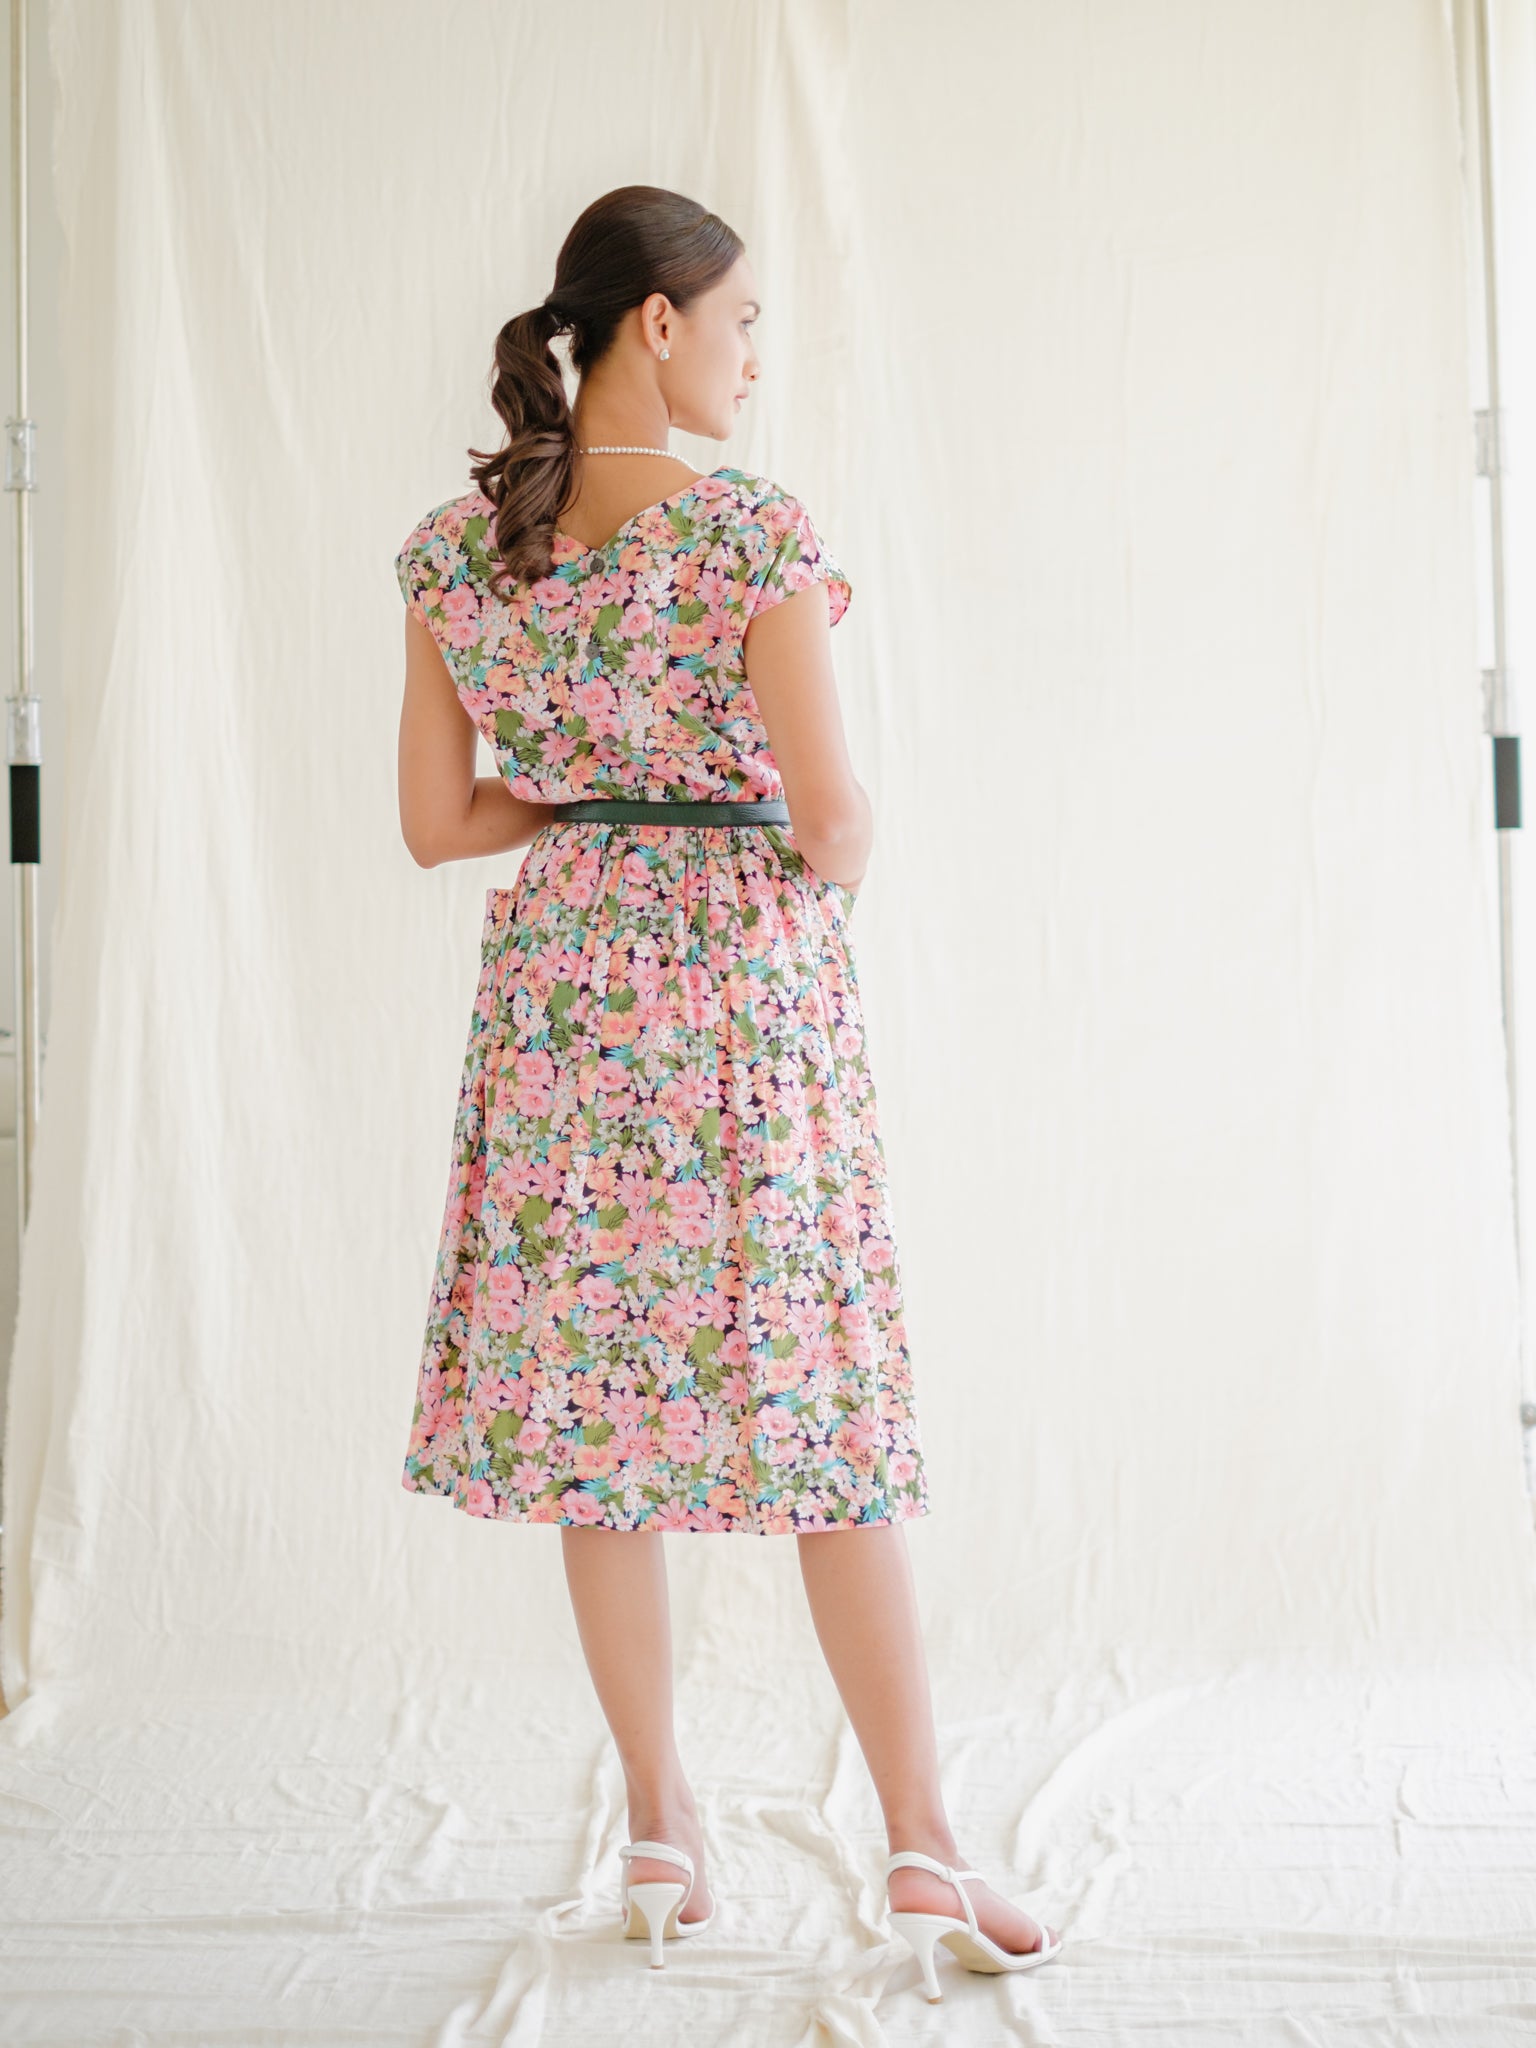 Floral cotton vintage dress